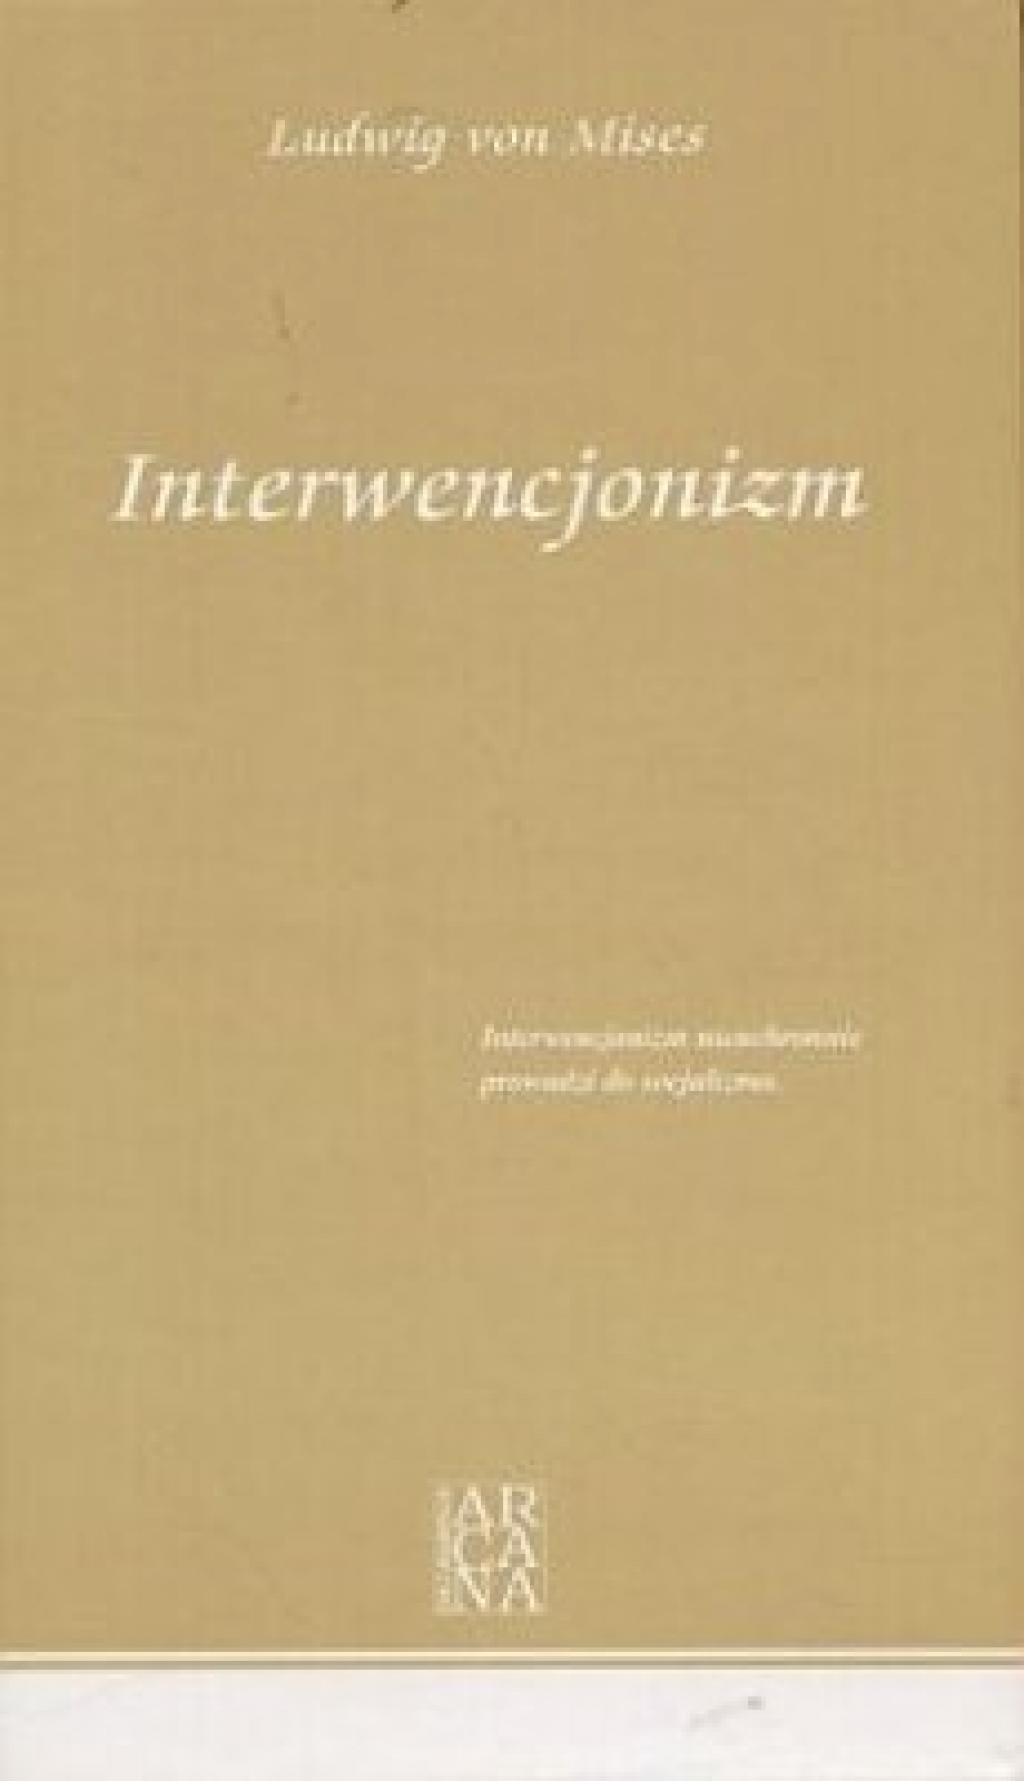 Ludwig von Mises - Interwencjonizm